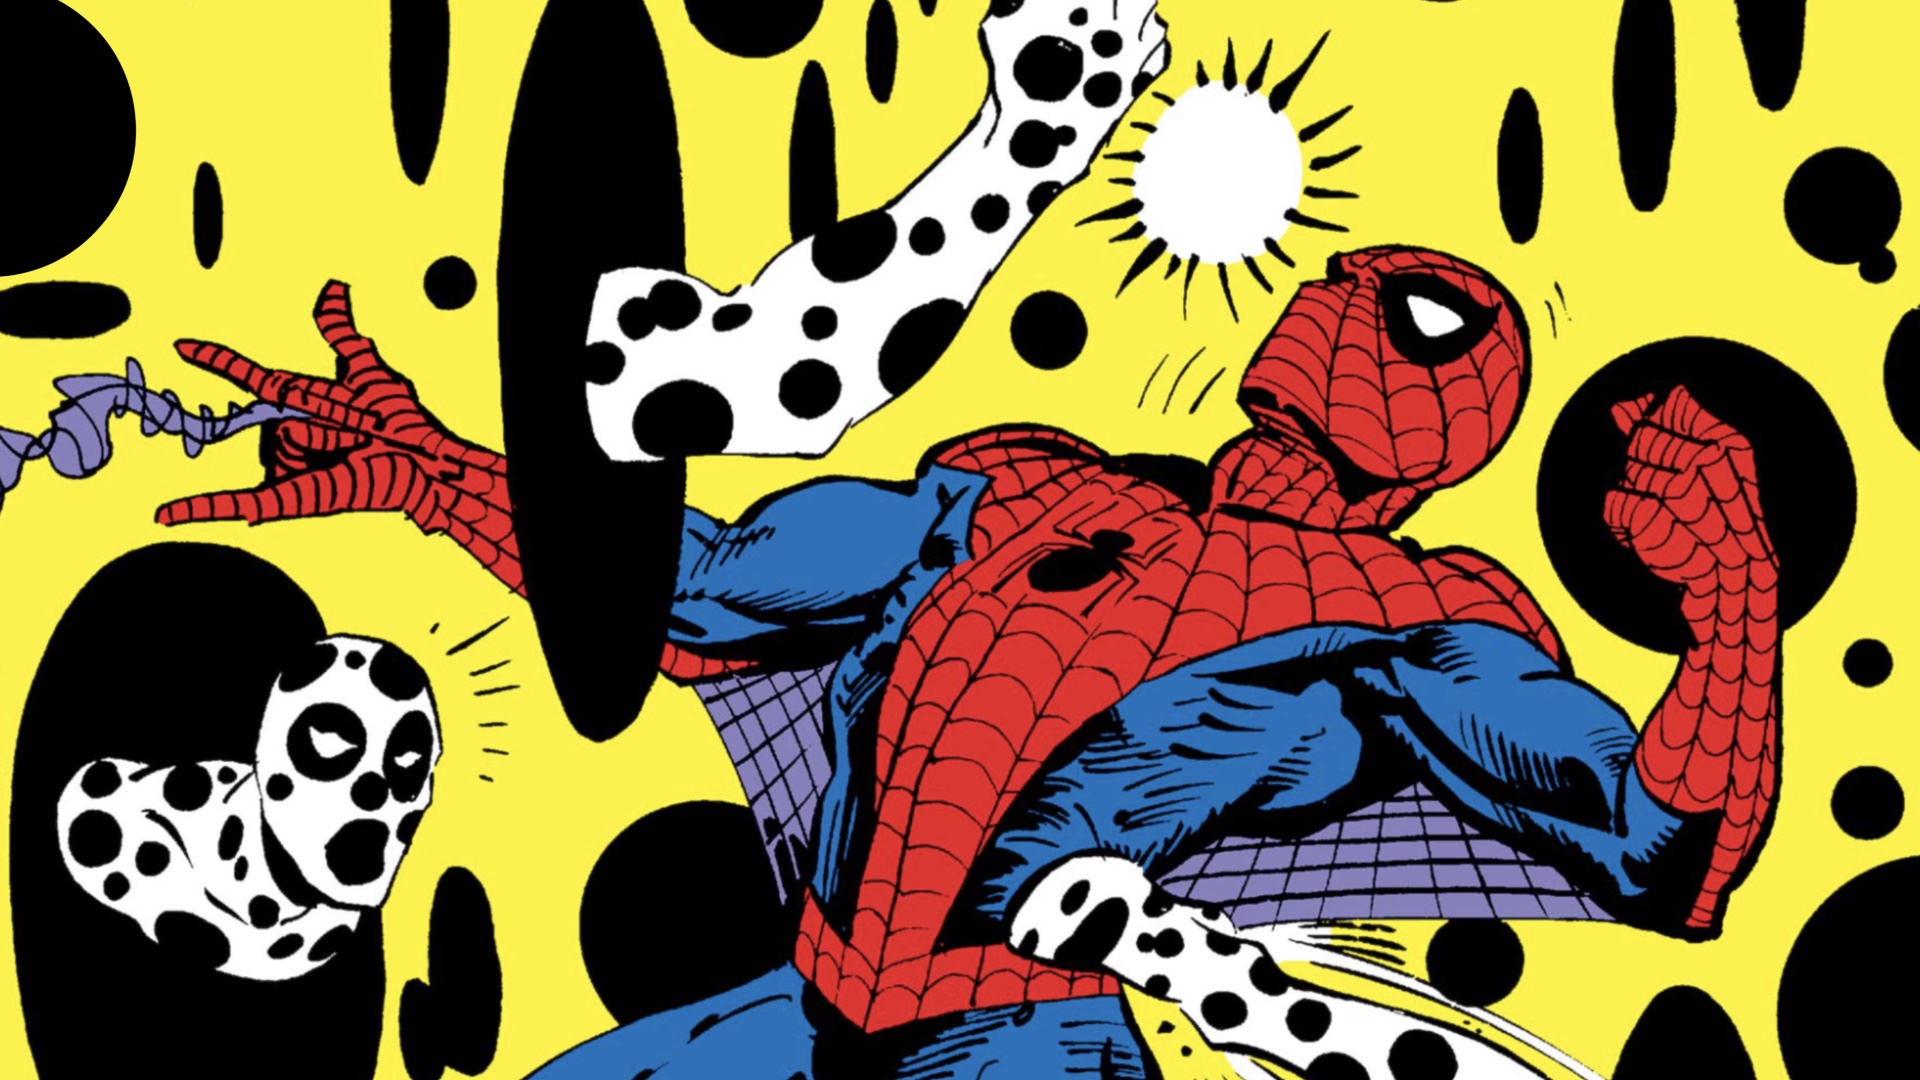 Spider-Man: Across the Spider-Verse - Meet the bizarre villain The Spot | GamesRadar+